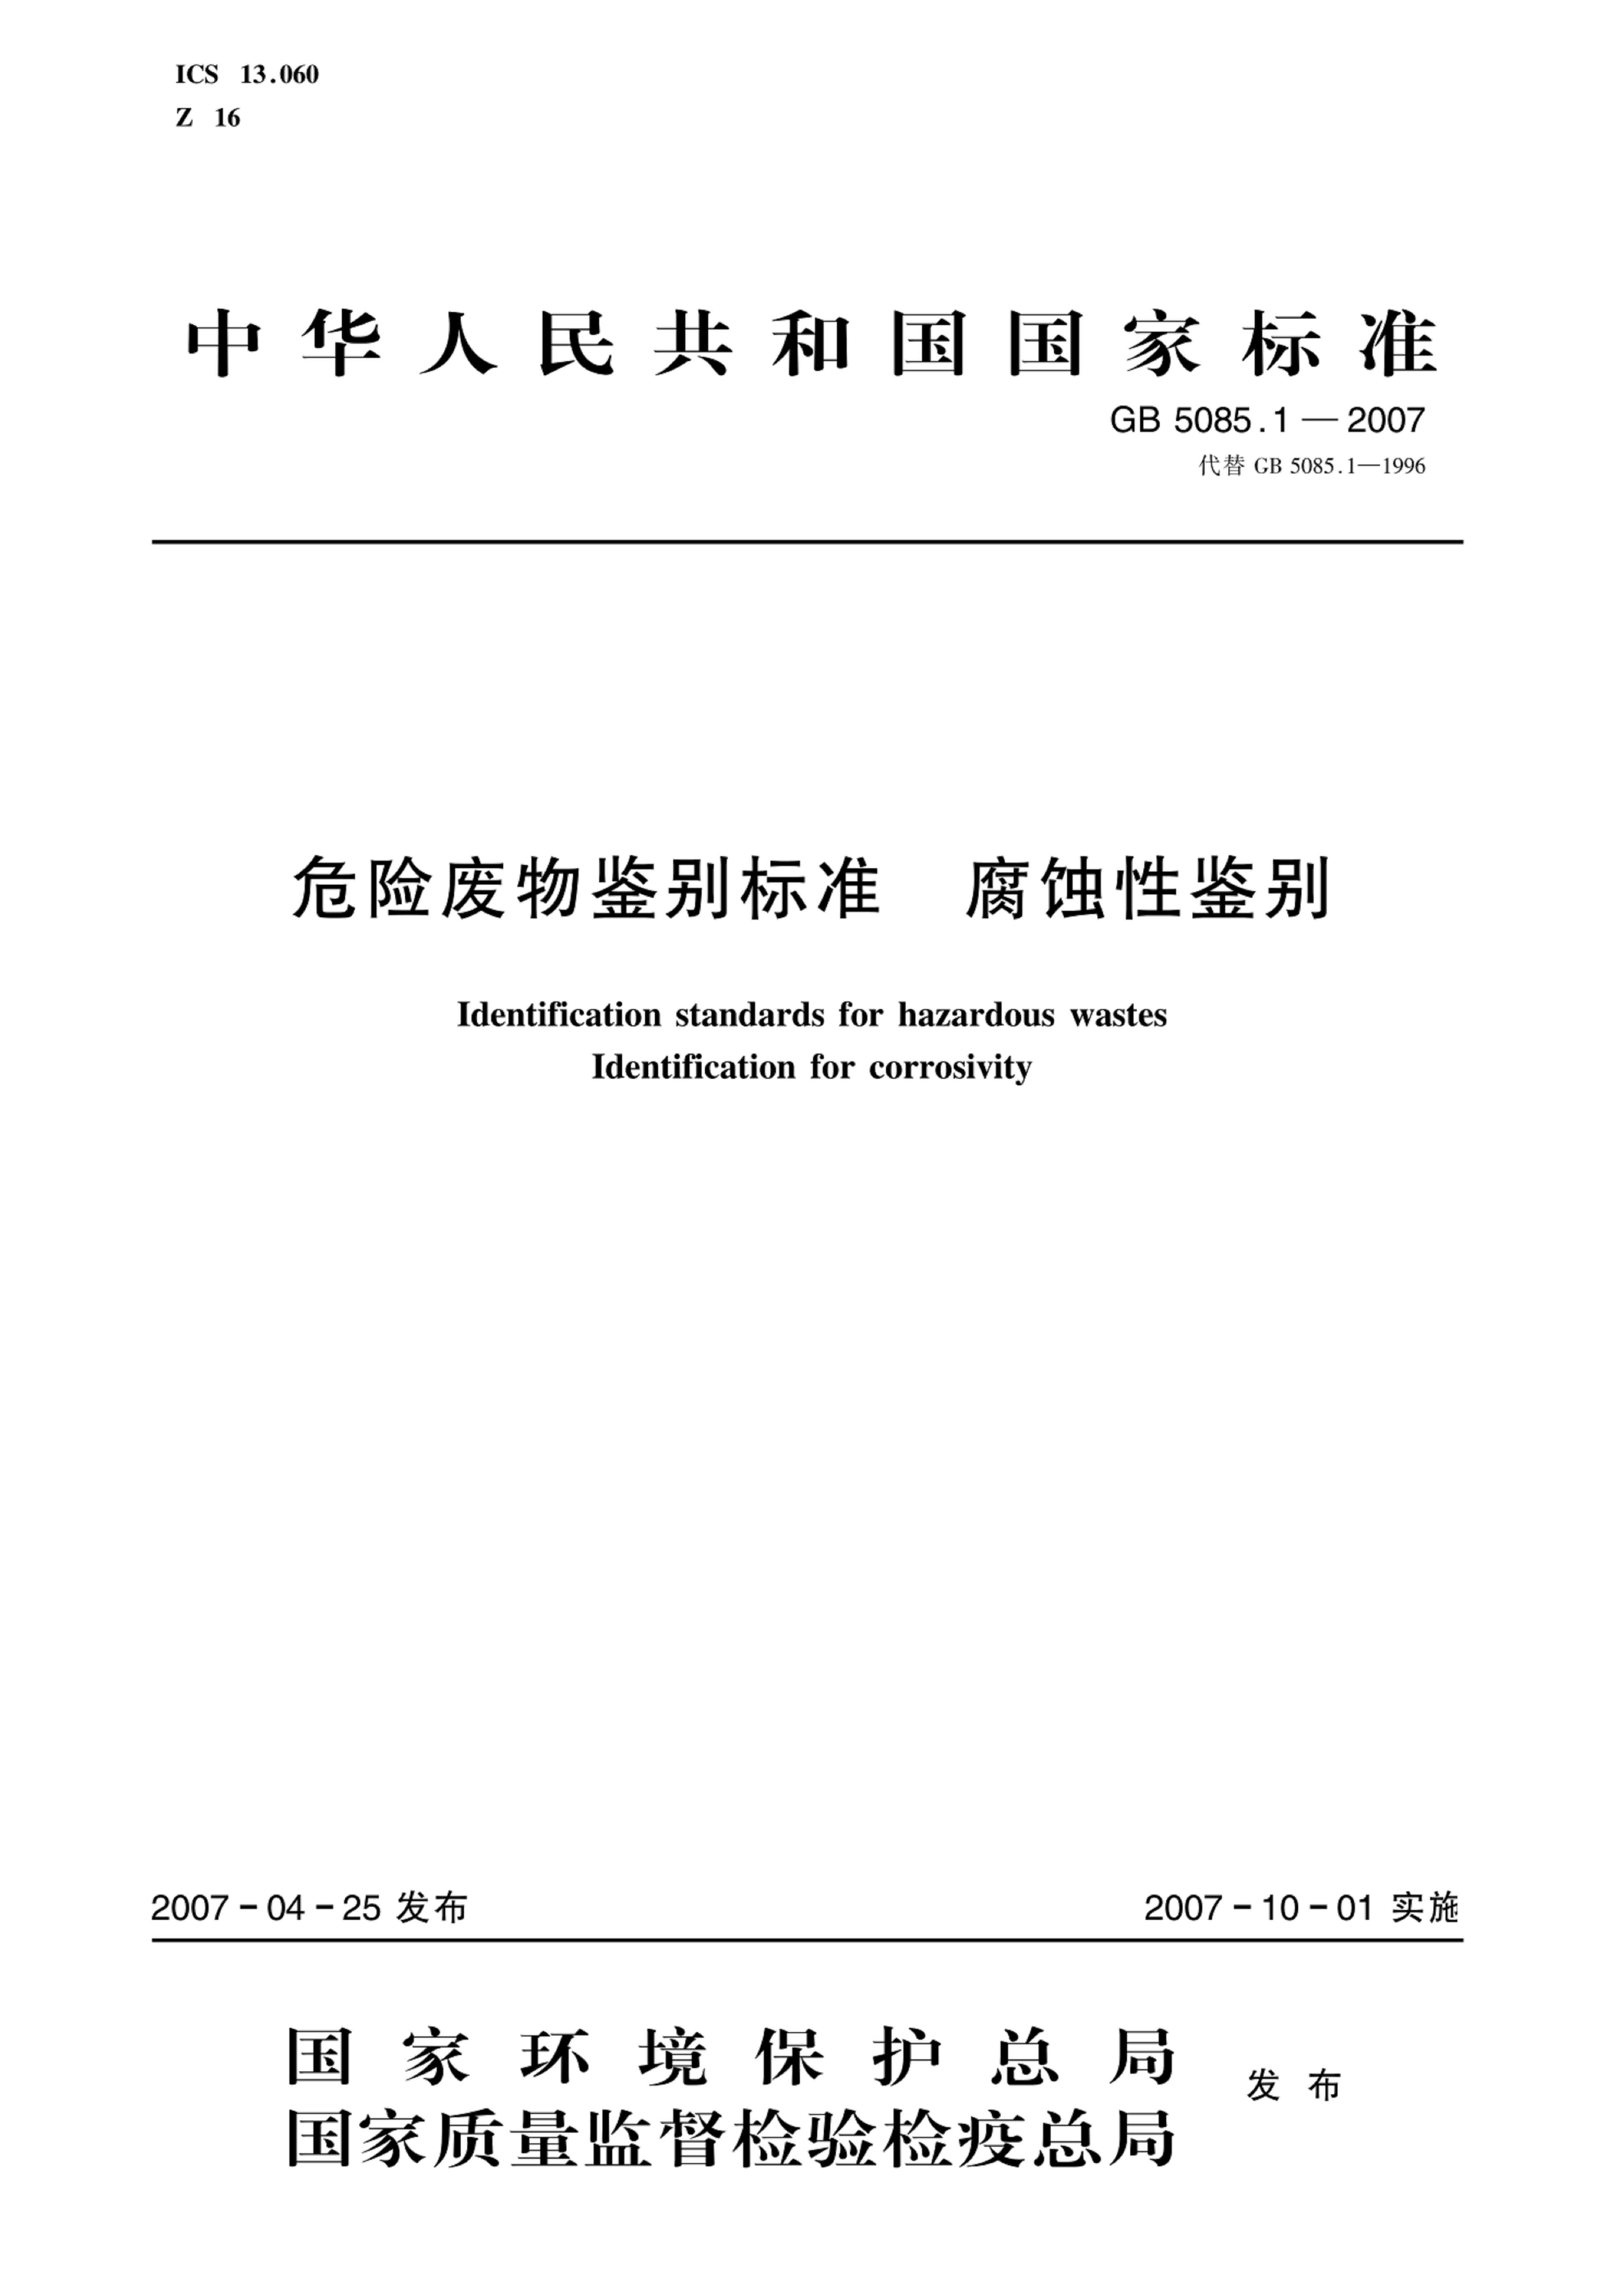 危险废物鉴别标准 腐蚀性鉴别（GB 5085.1—2007）